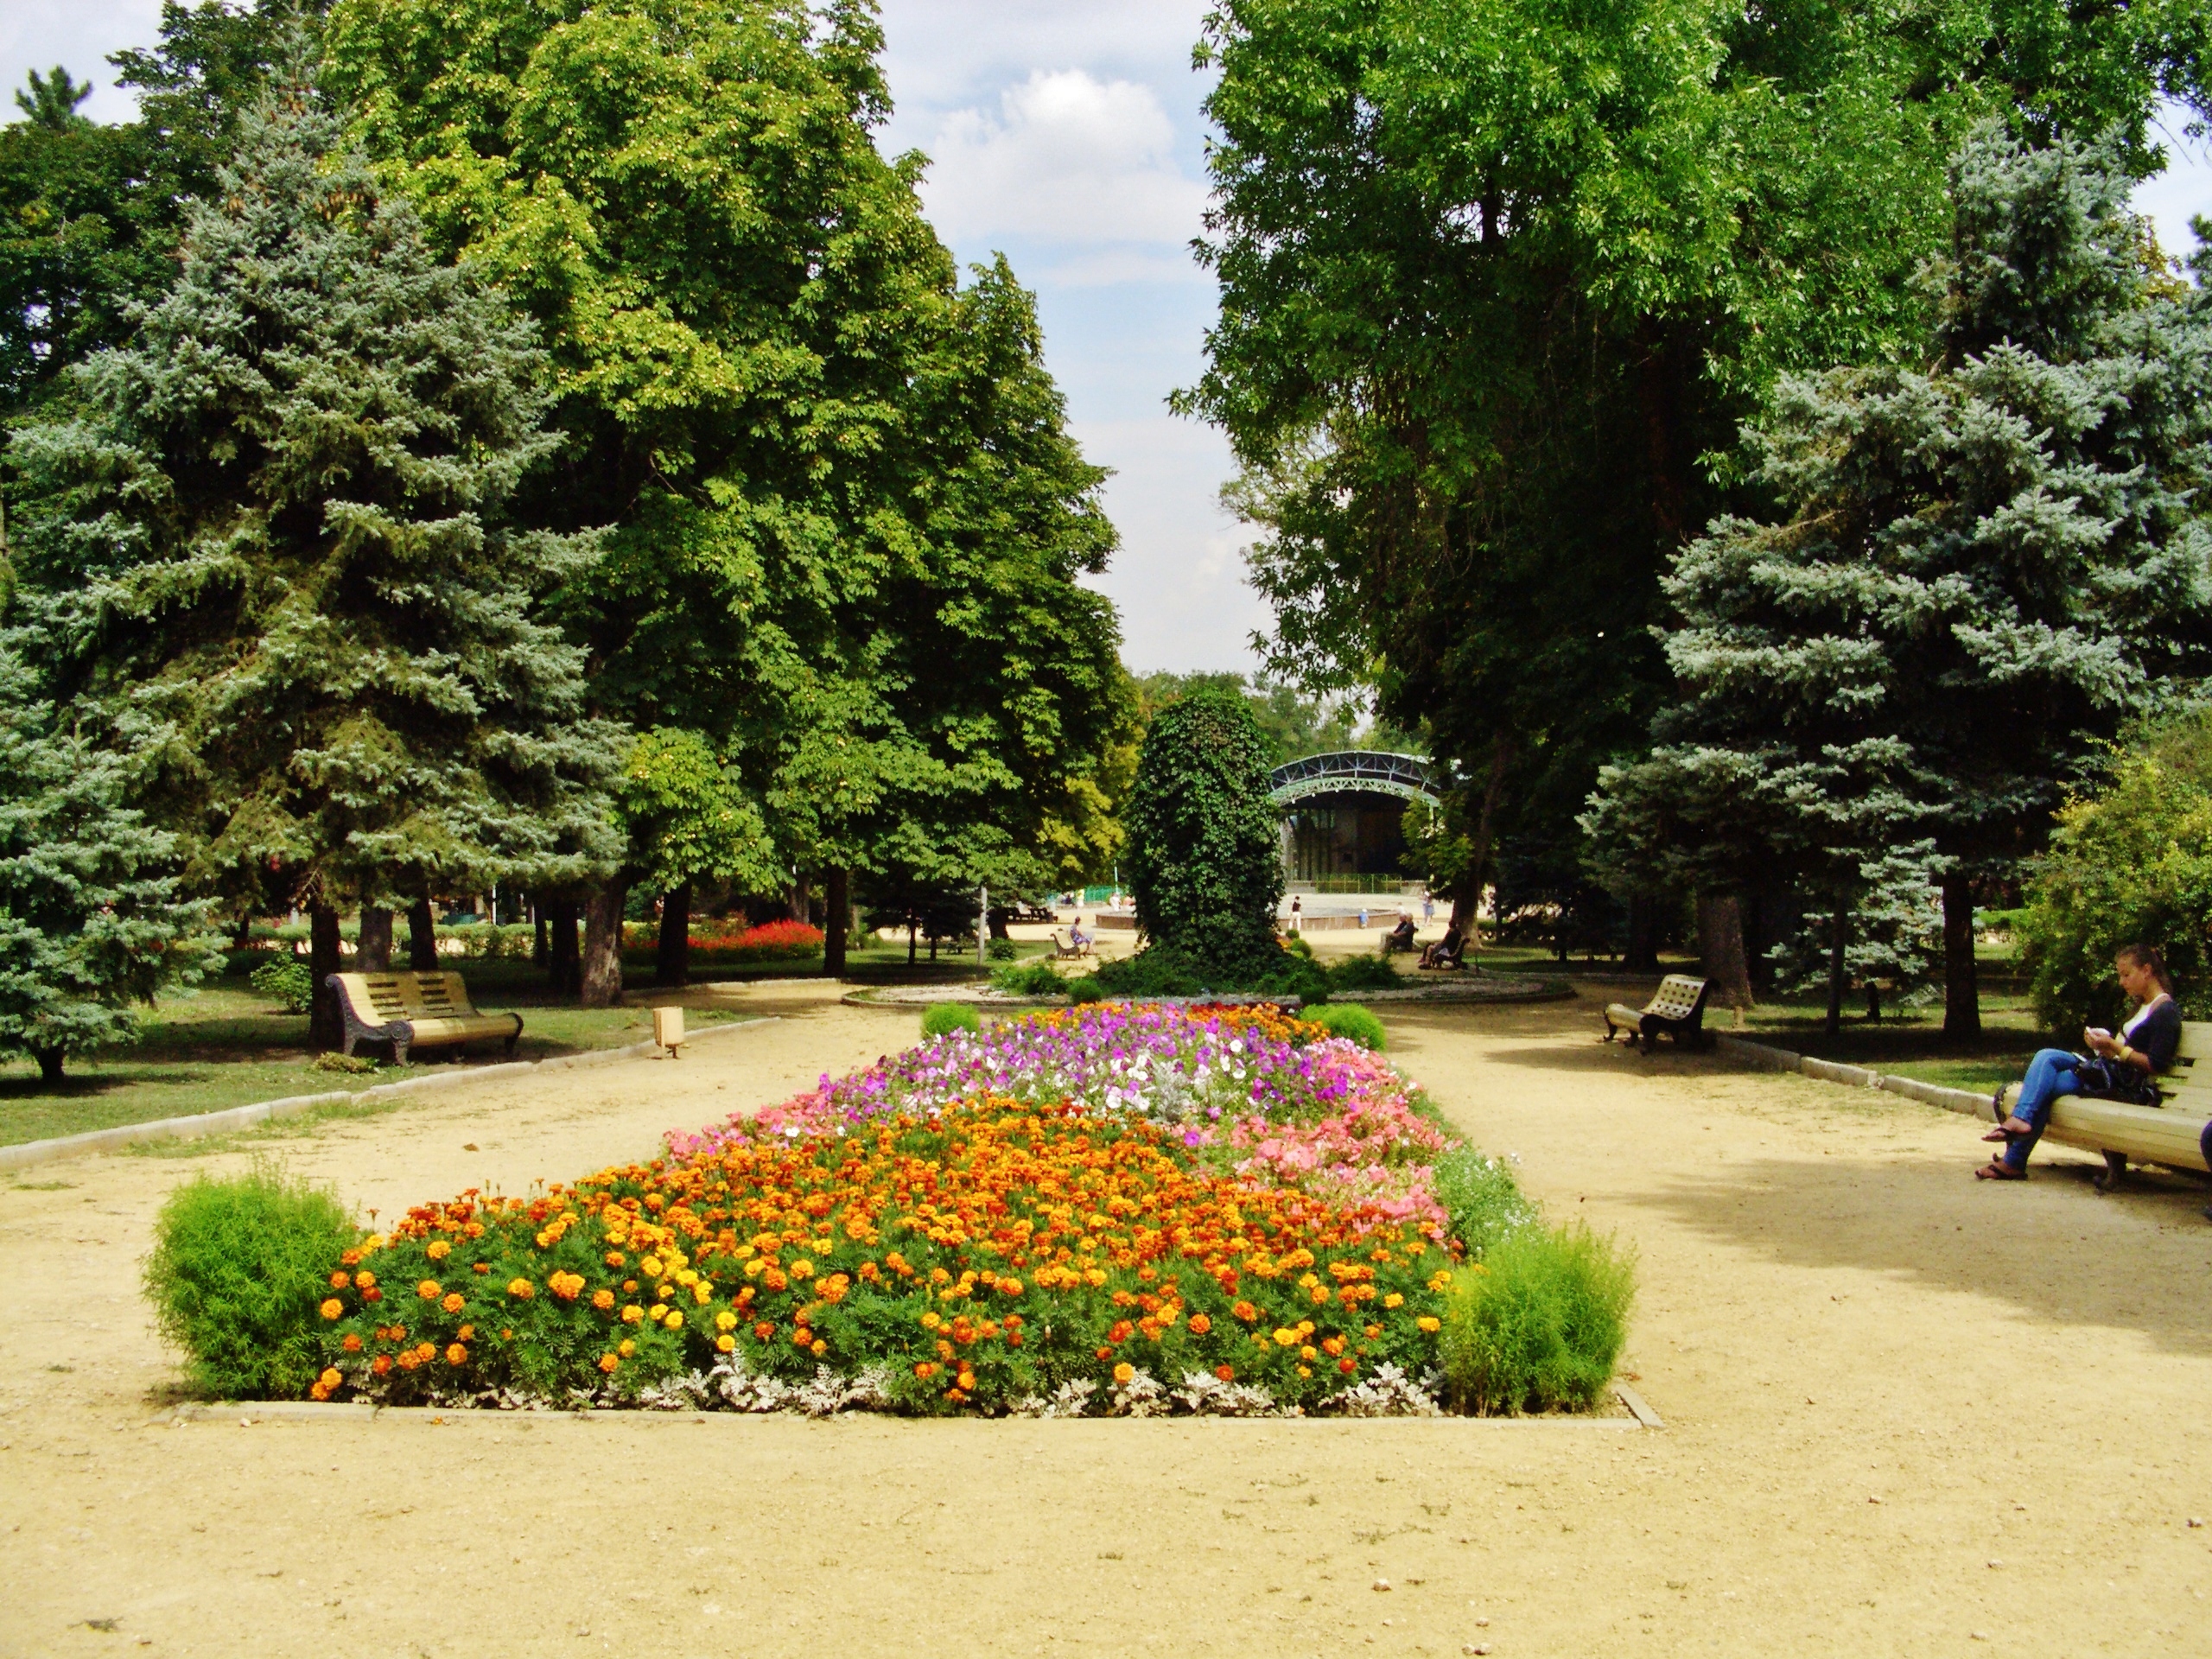 Таганрог городской парк